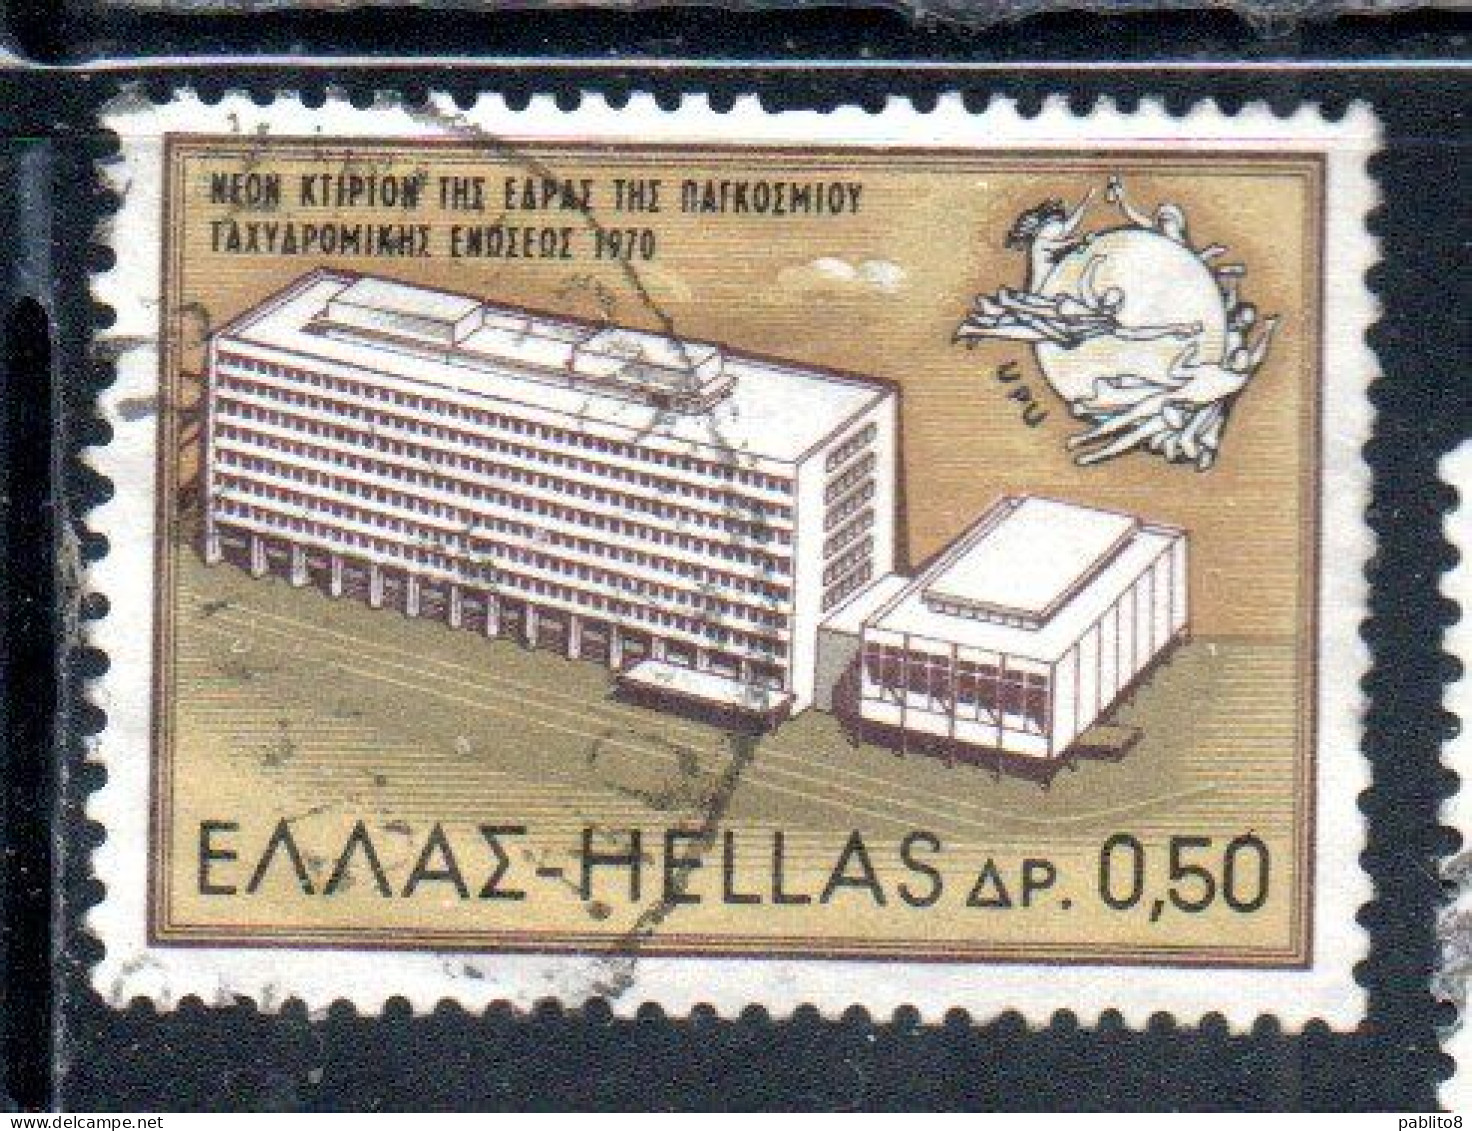 GREECE GRECIA HELLAS 1970 INAUGURATION OF THE UPU HEADQUARTERS BERN 50l USED USATO OBLITERE' - Usati